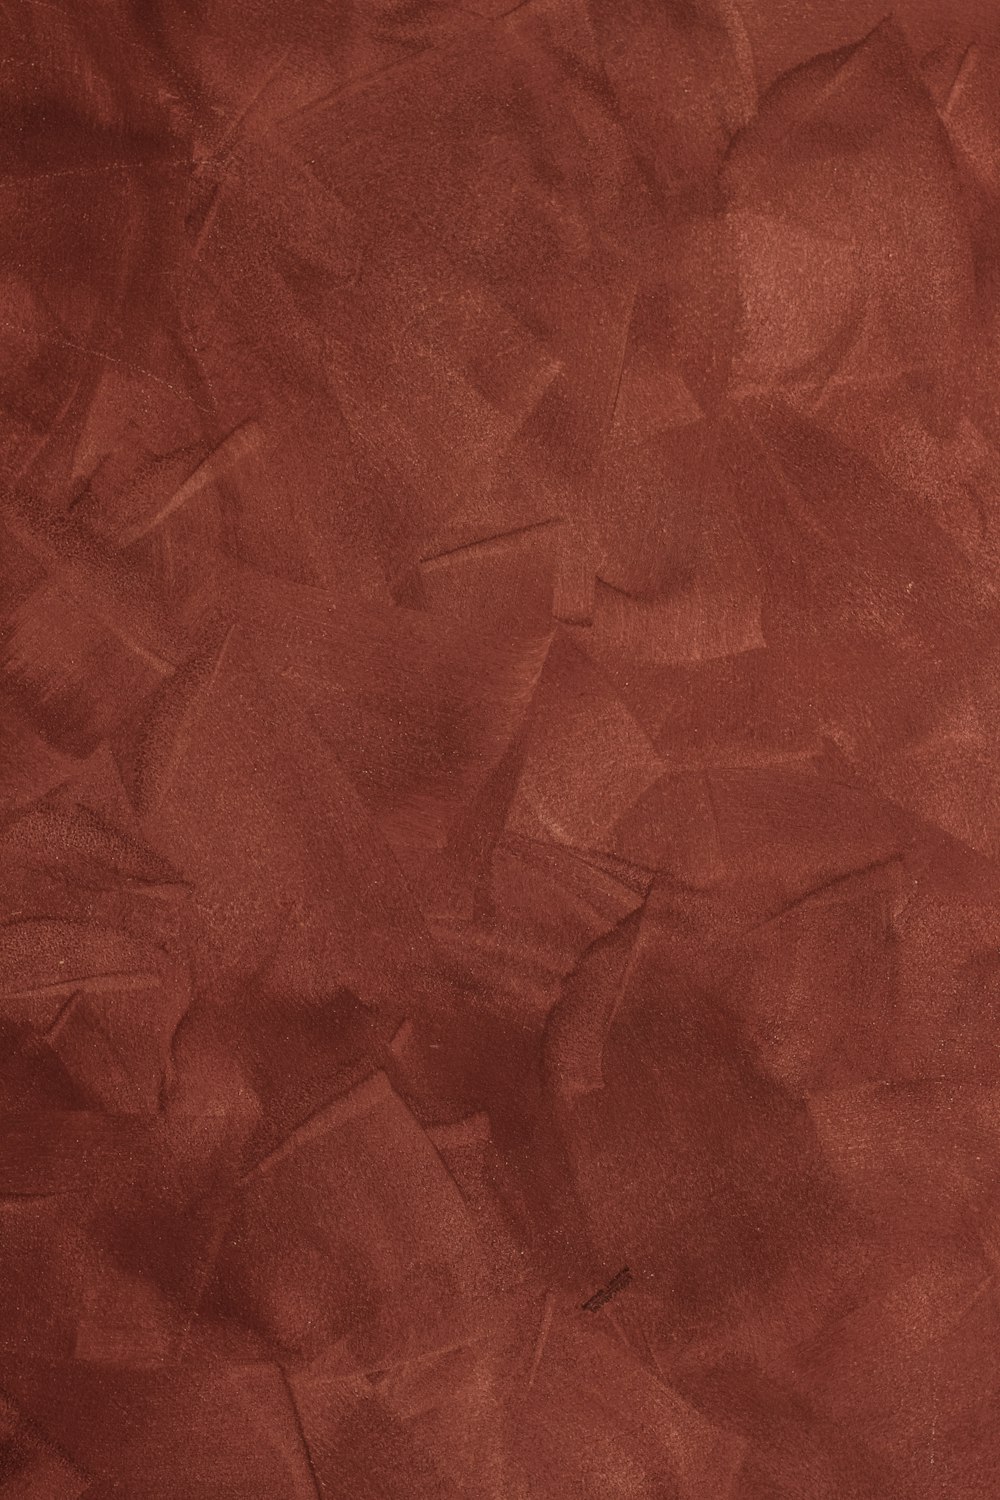 uno sfondo rosso con una trama ruvida di carta